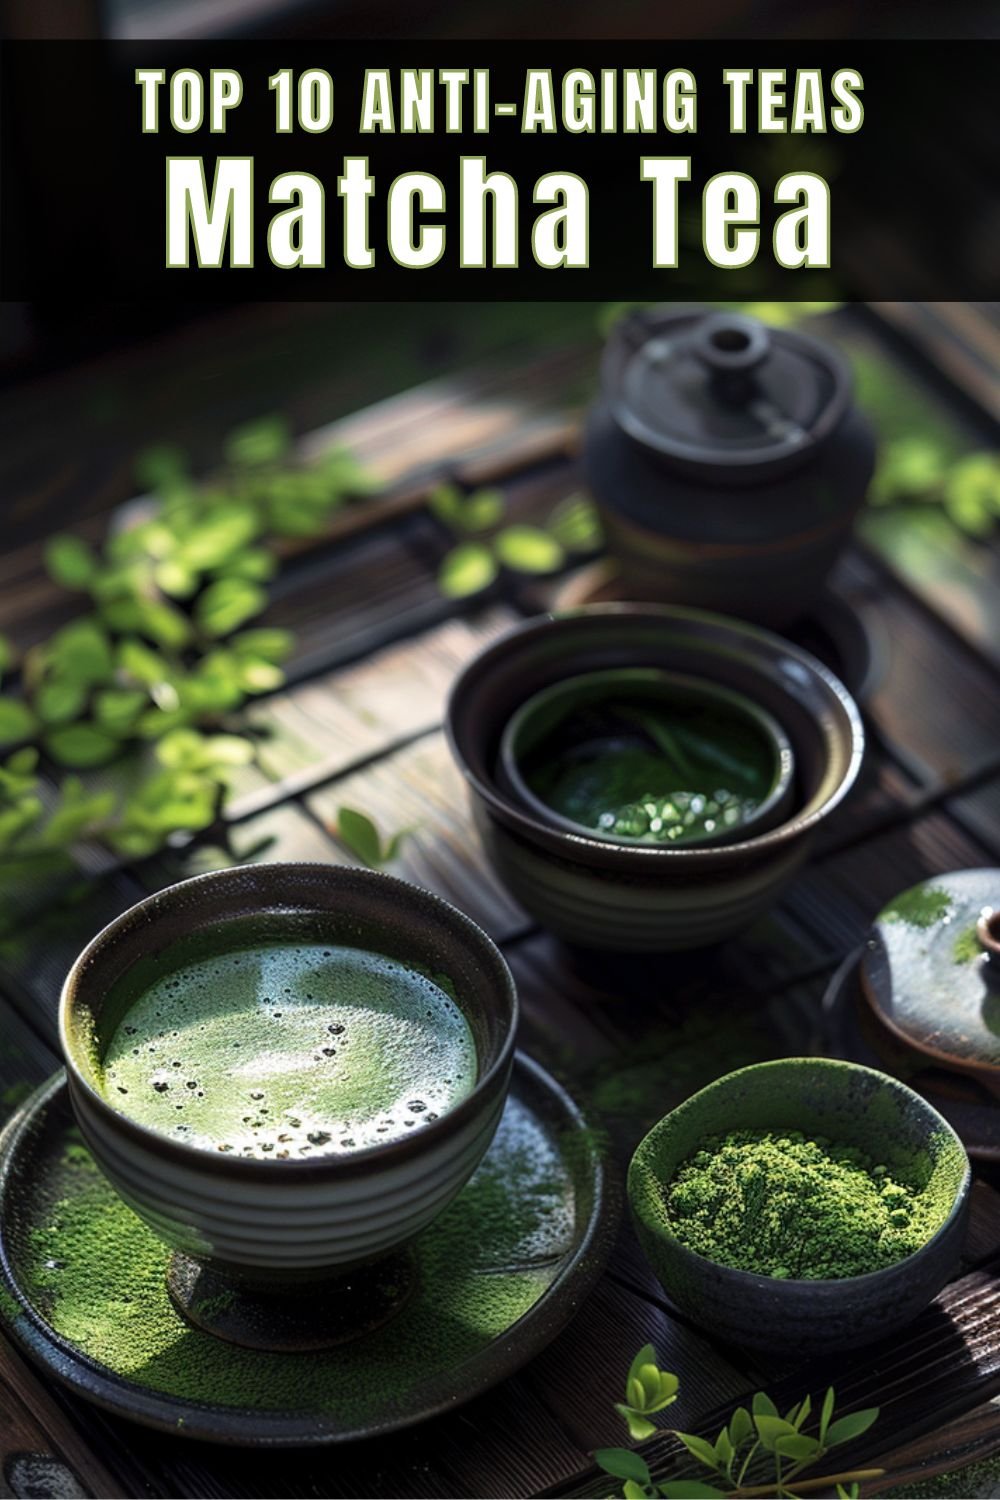 Top 10 Anti-Aging Teas Matcha Tea